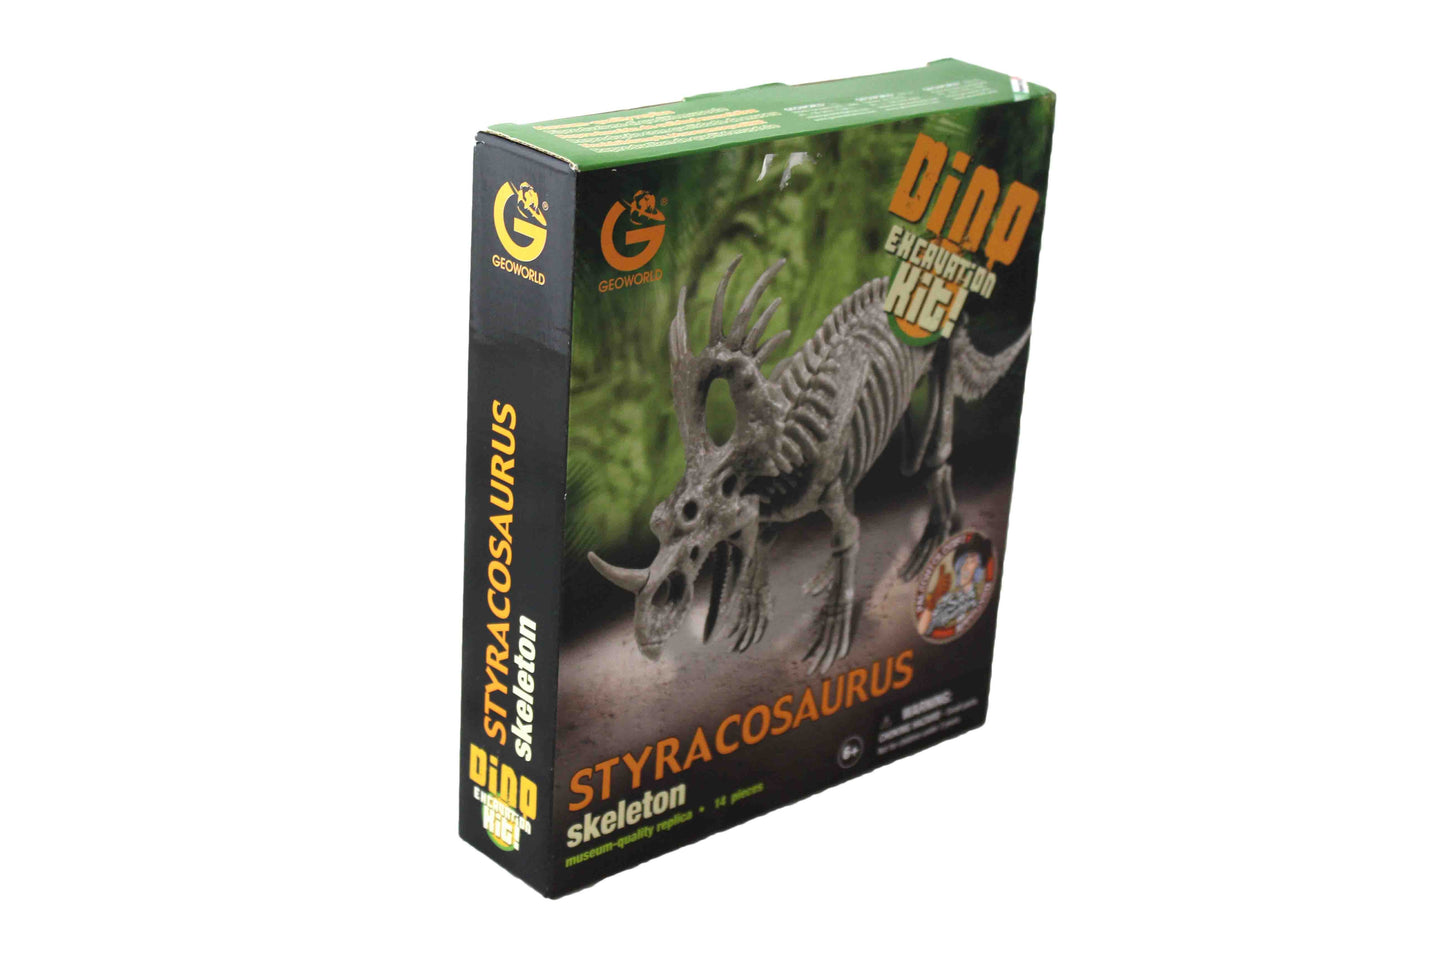 Styracosaurus Skeleton Dino Excavation Kit - BuyAbility South Africa